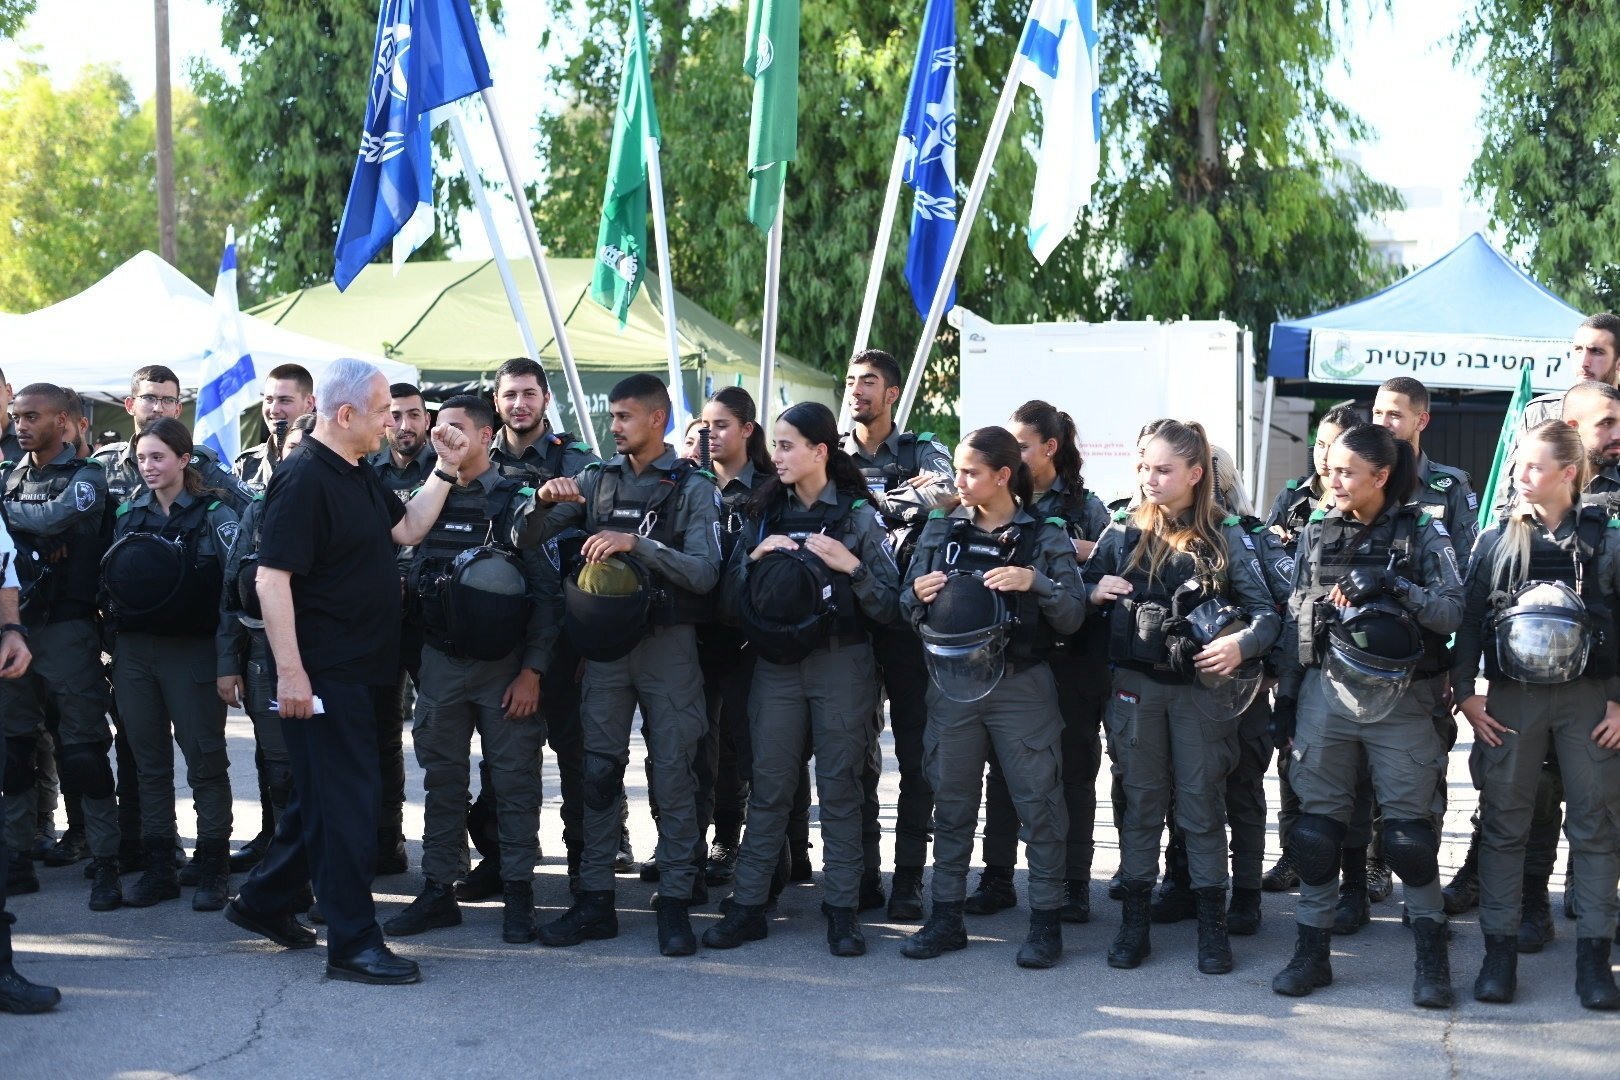 Fuerte despliegue de policías en ciudades mixtas de Israel: "Es la gran amenaza"